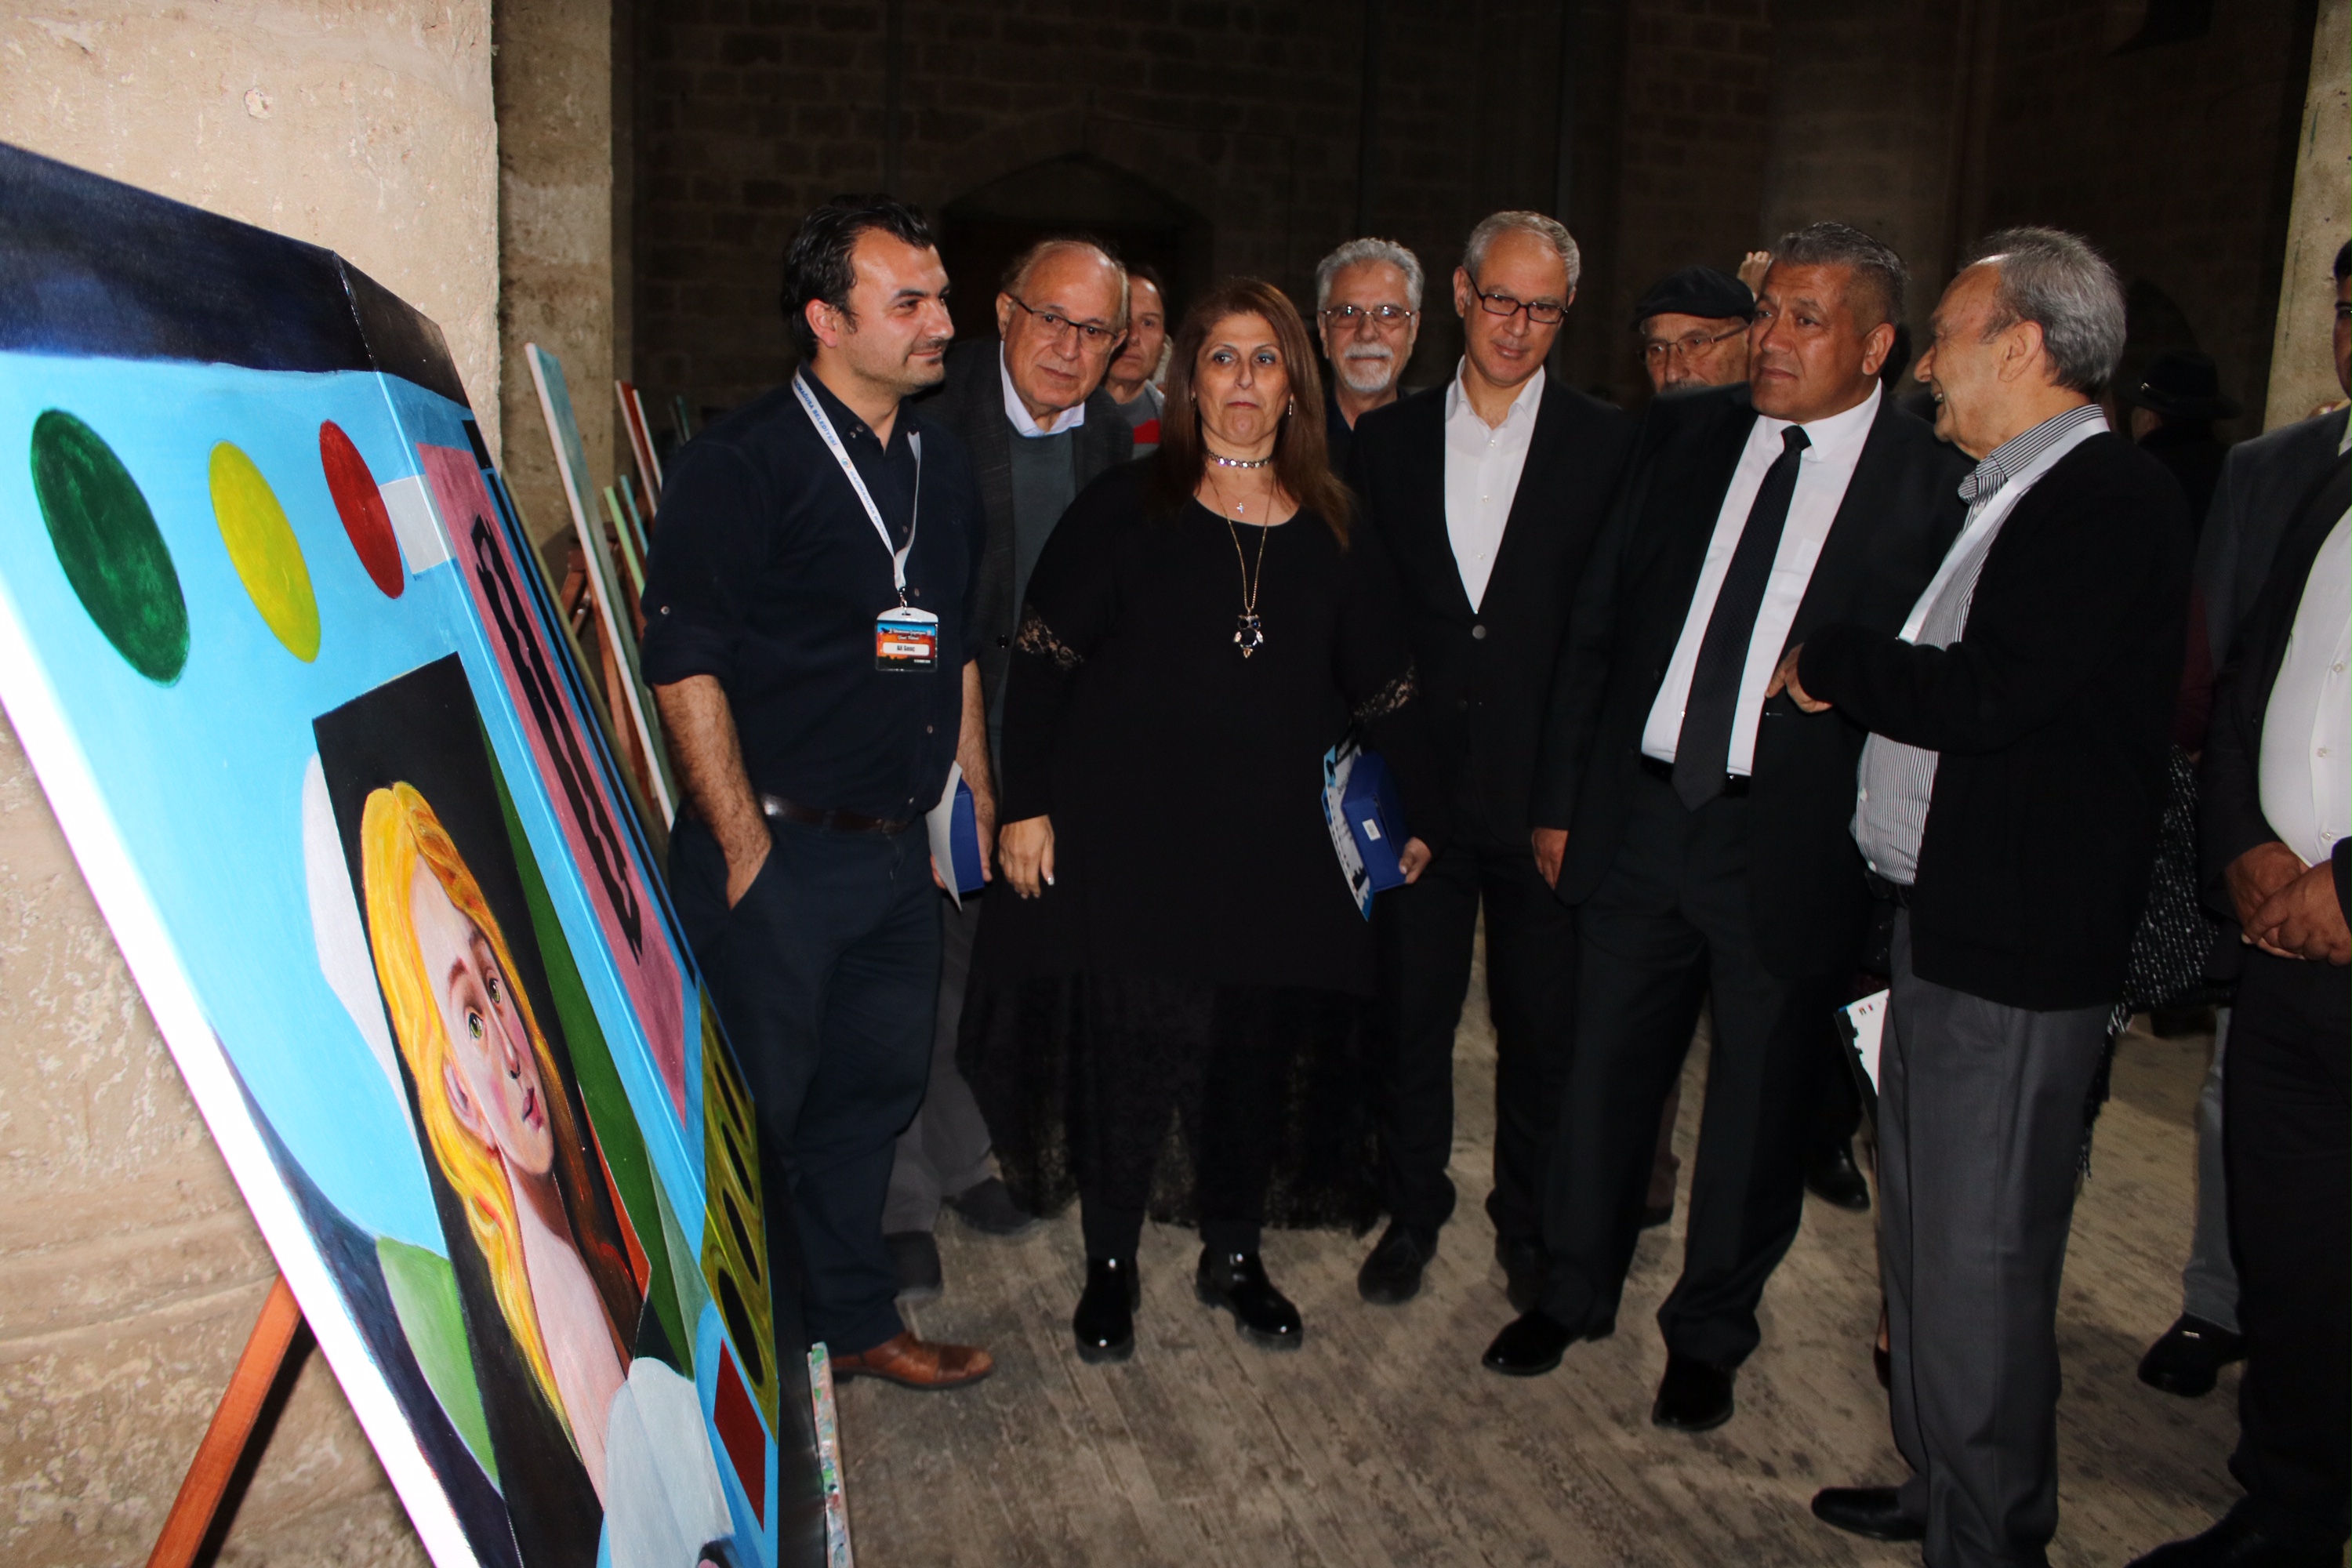 Uluslararası Gazimağusa Sanat Festivali, Buğday Camii’nde açılışı yapılan sergi ile sona erdi